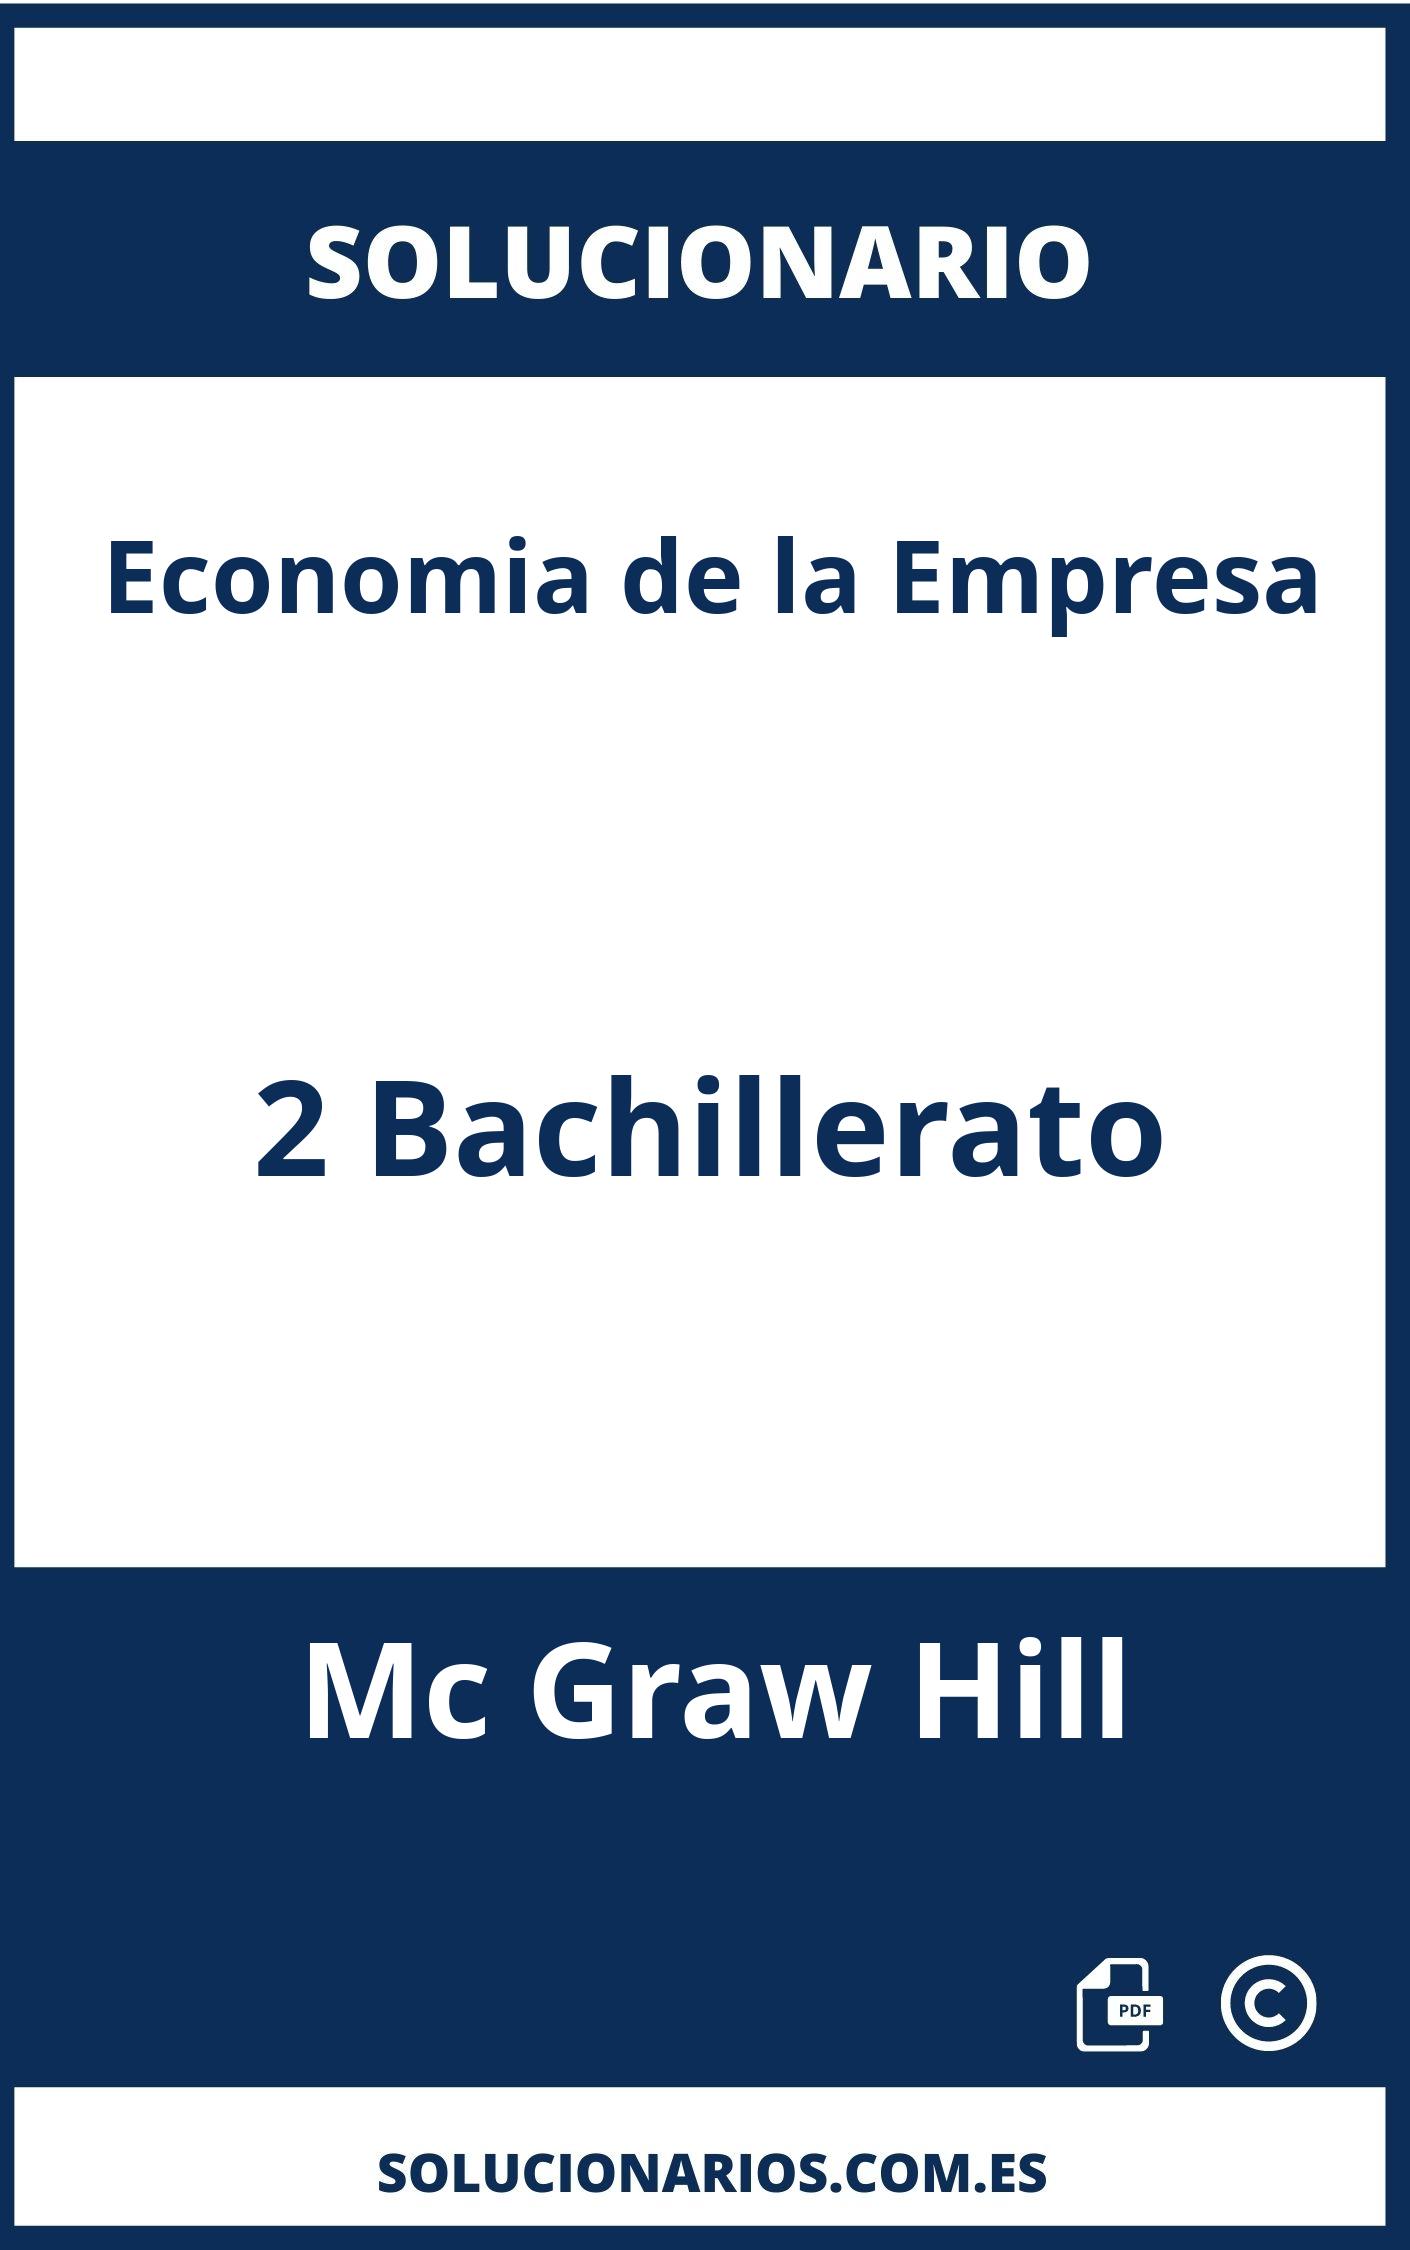 Solucionario Economia de la Empresa 2 Bachillerato Mc Graw Hill